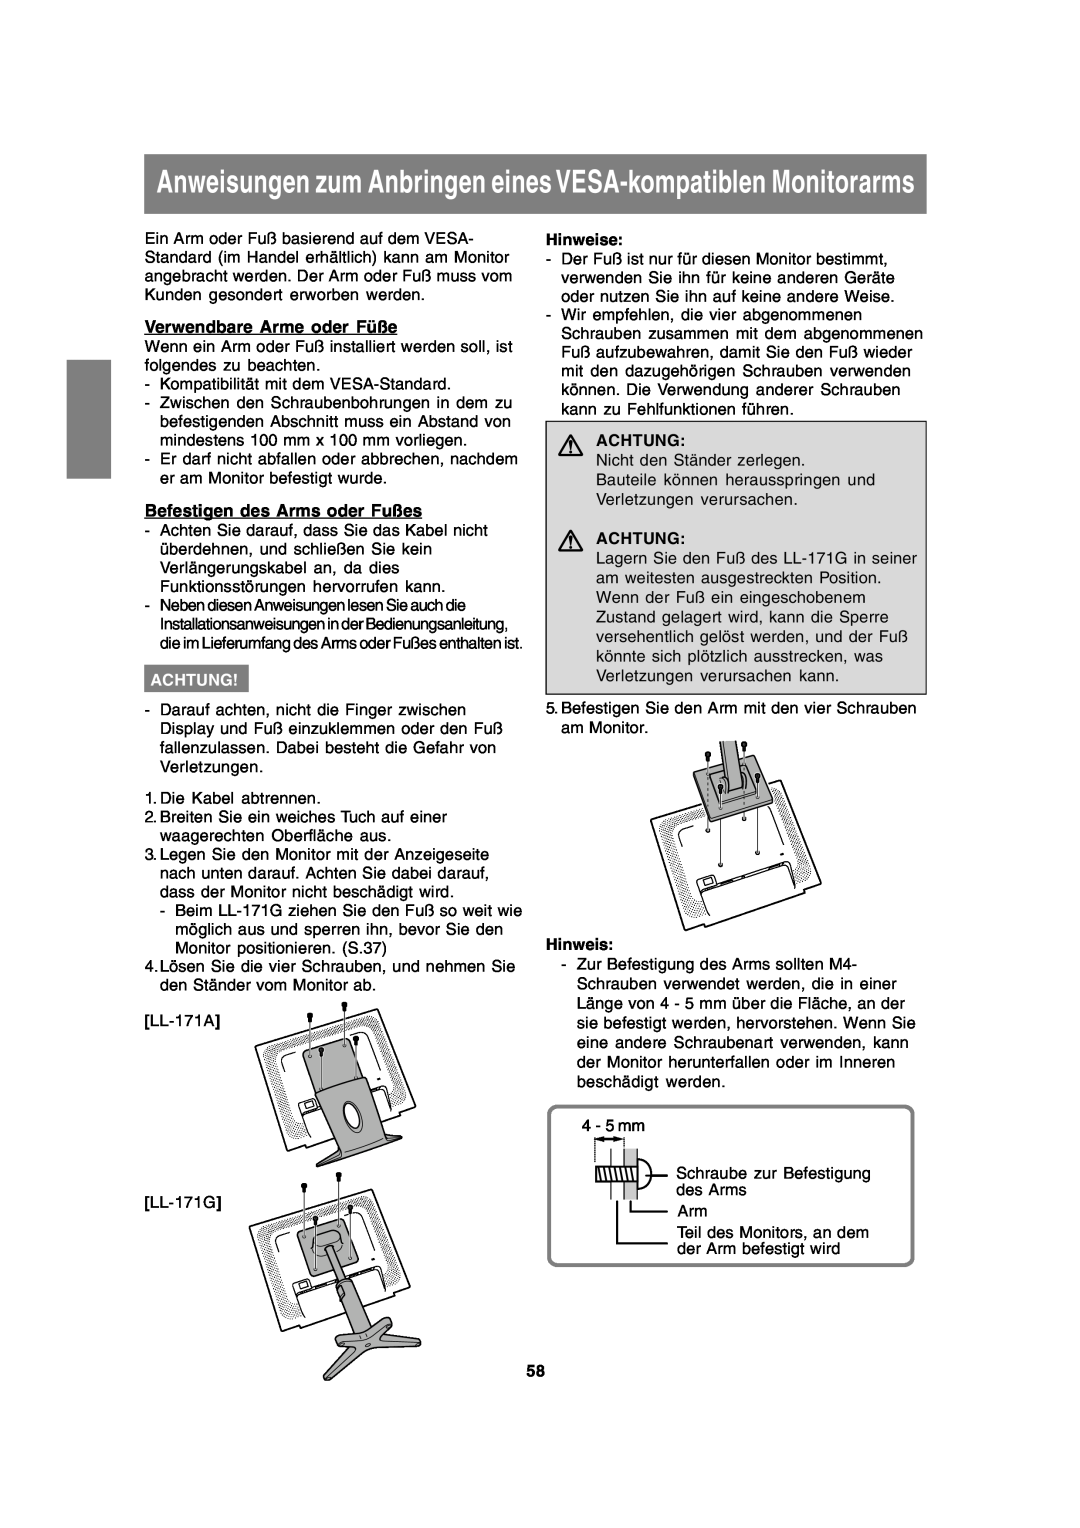 Sharp LL-171A LL-171G Anweisungen zum Anbringen eines VESA-kompatiblen Monitorarms, Verwendbare Arme oder Füße, Achtung 